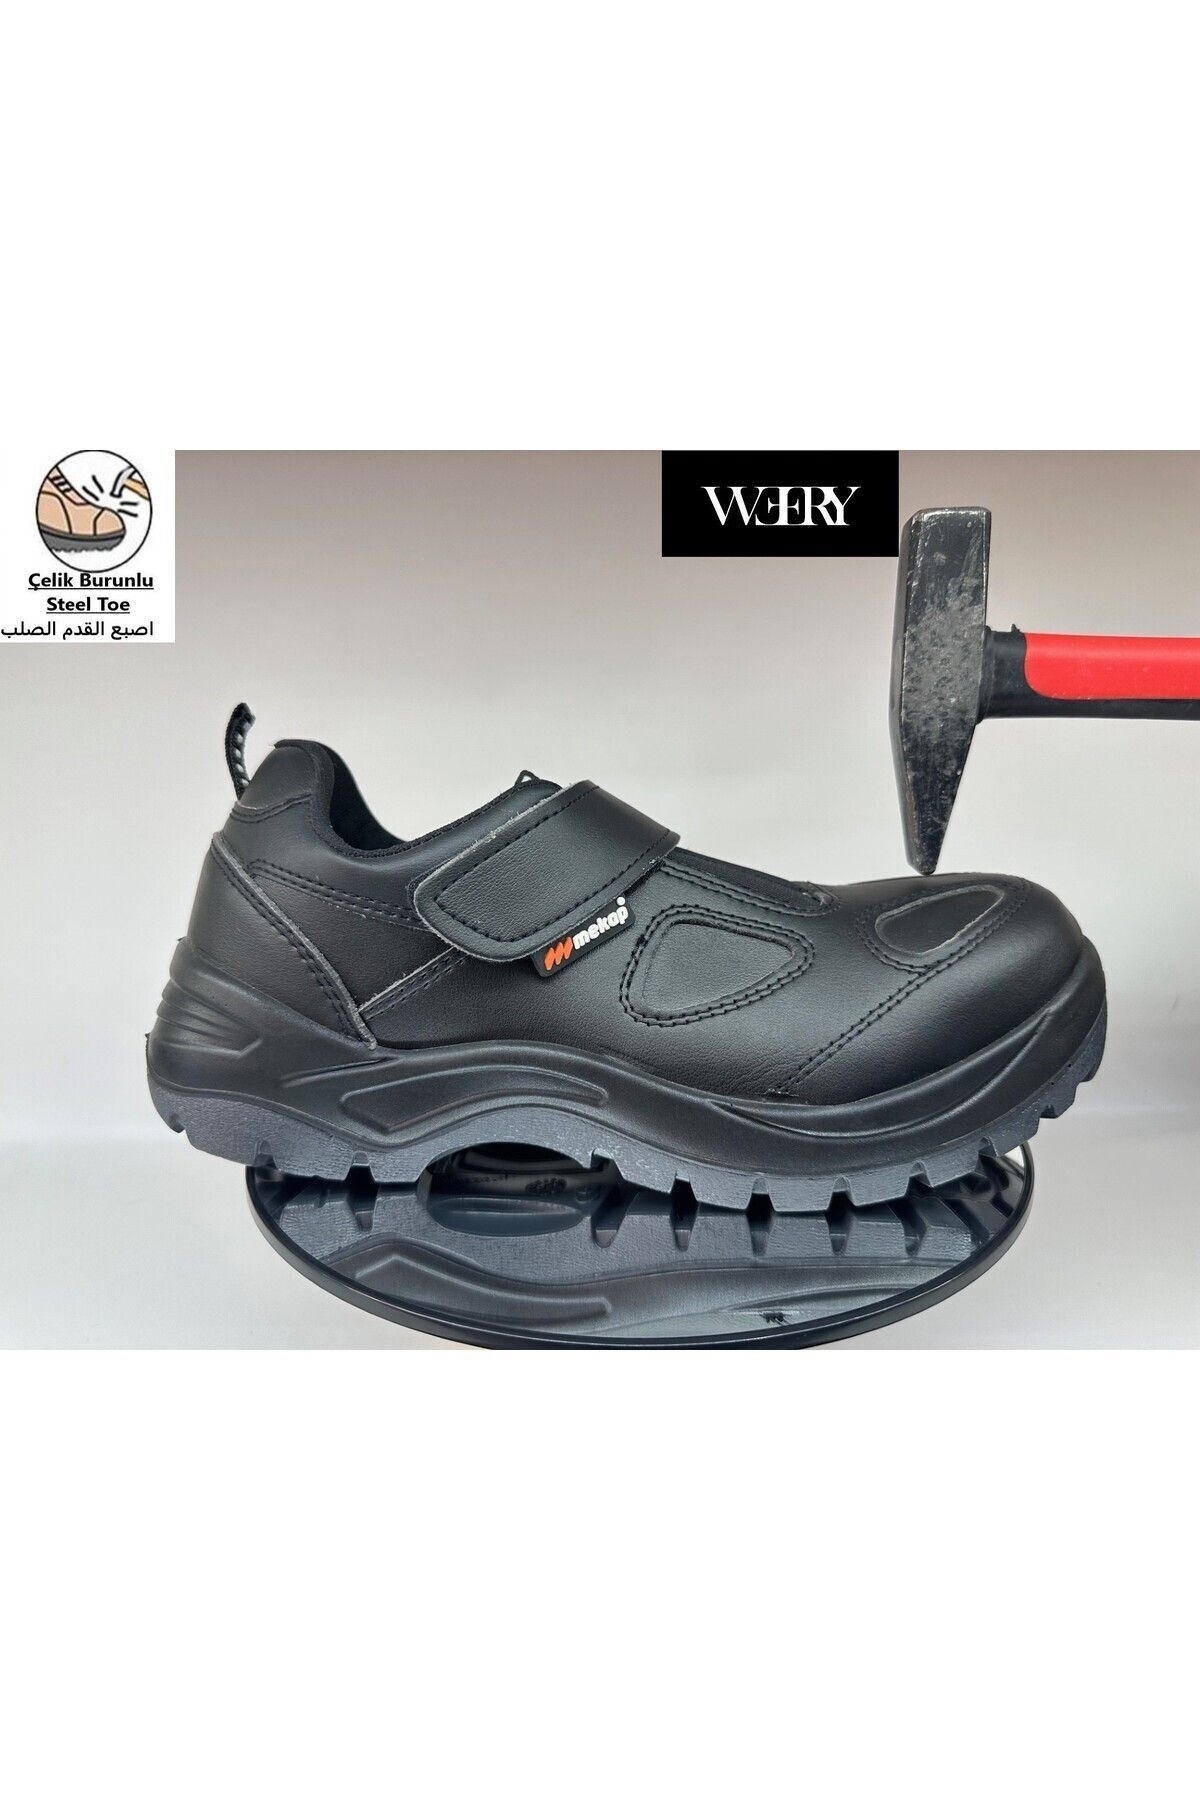 e&e Mekap 155 S2 Kaliteli Deri Hafif Rahat 4 Mevsimlik Cırtlı Kapalı Model Çelik Burunlu İş Ayakkabısı